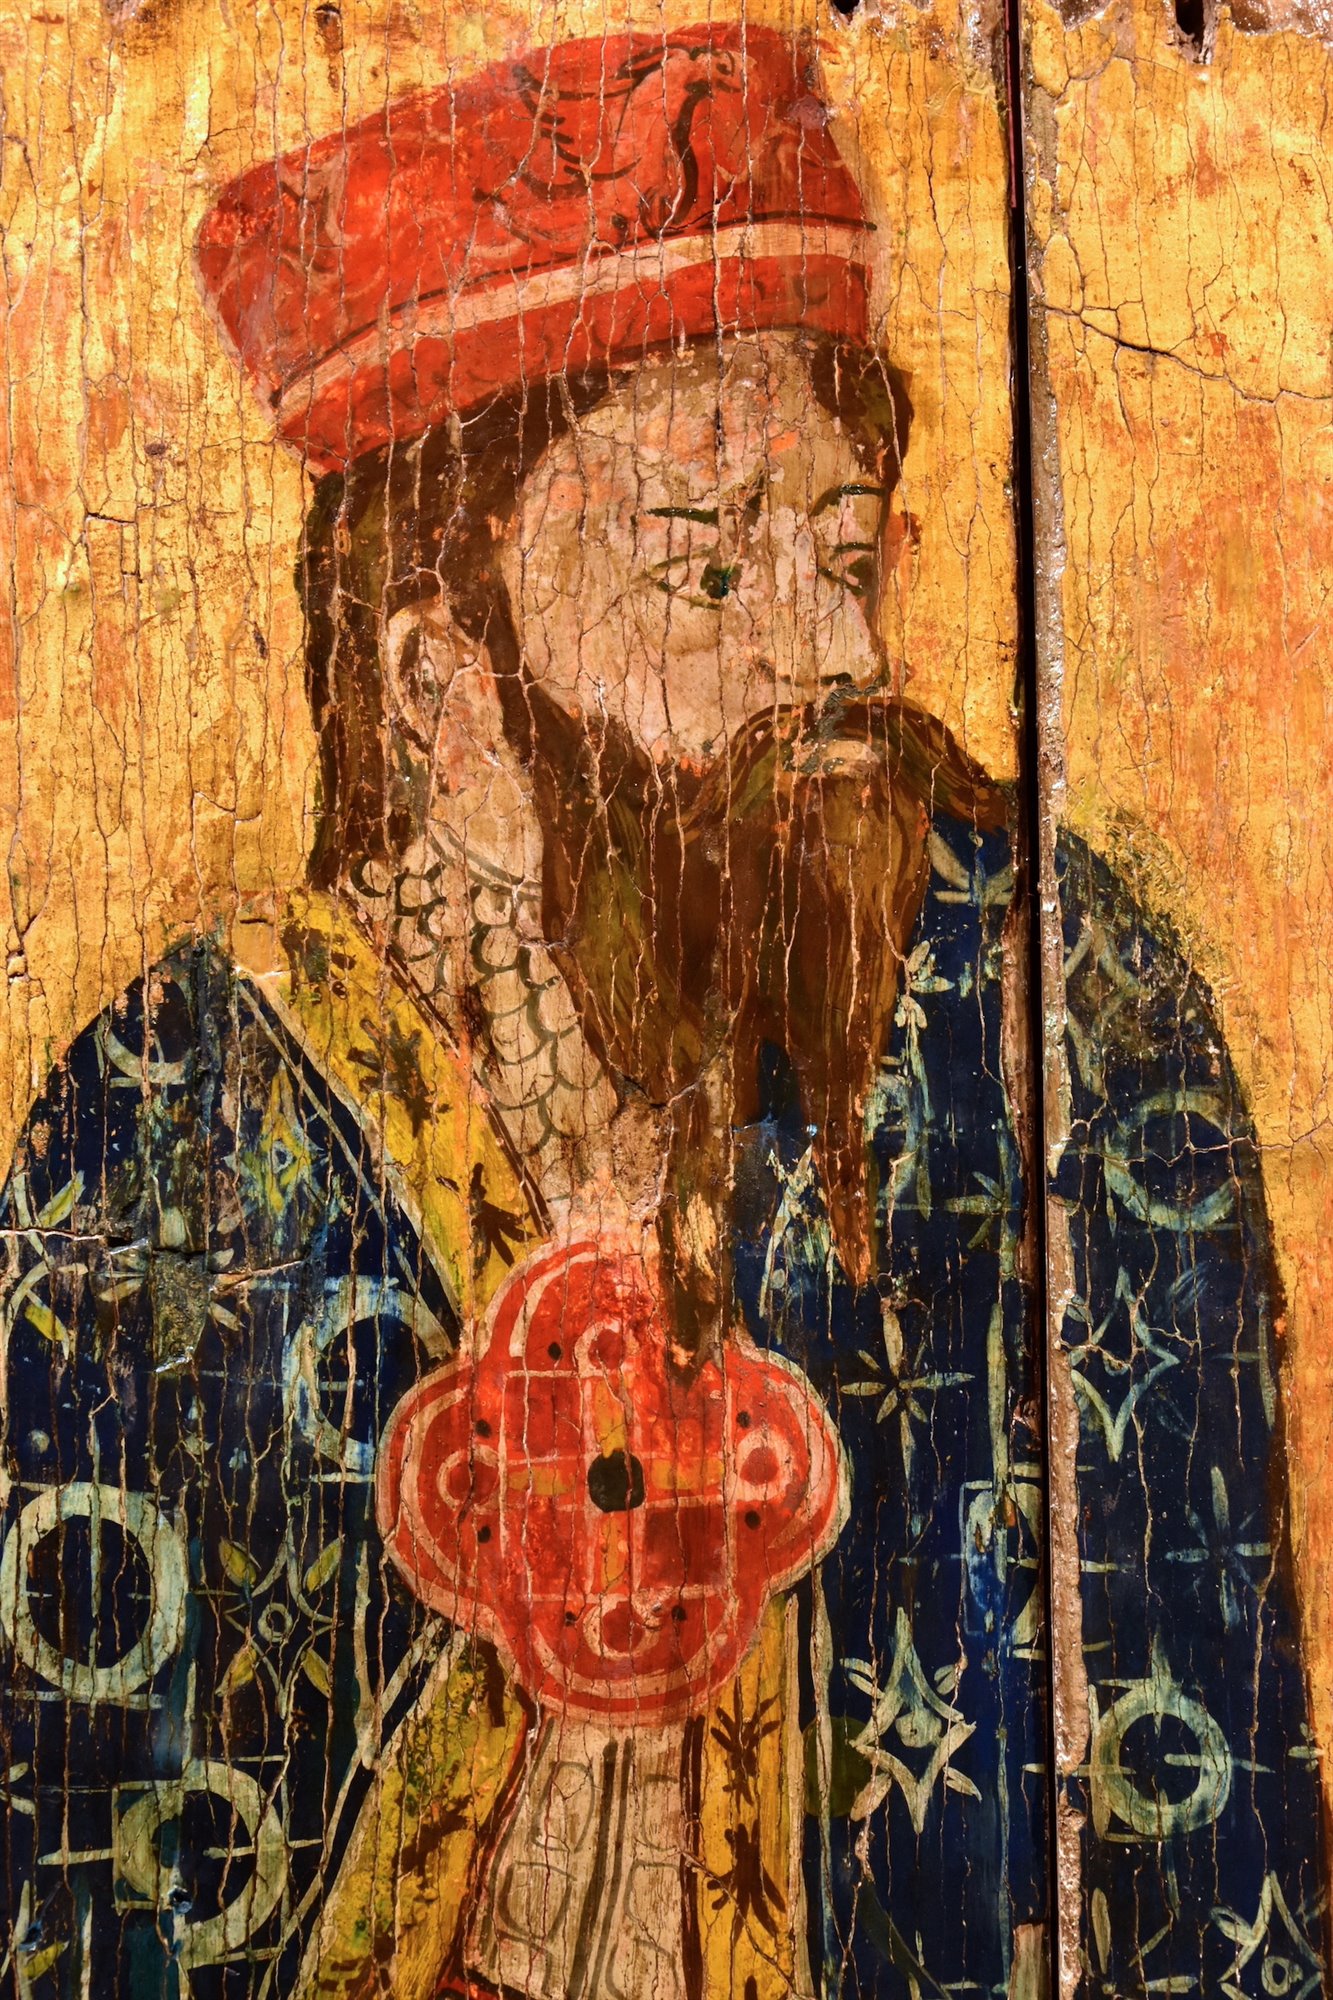 Manfredo IV di Saluzzo come Giuda Maccabeo/ Federico I di Saluzzo come Re Davide